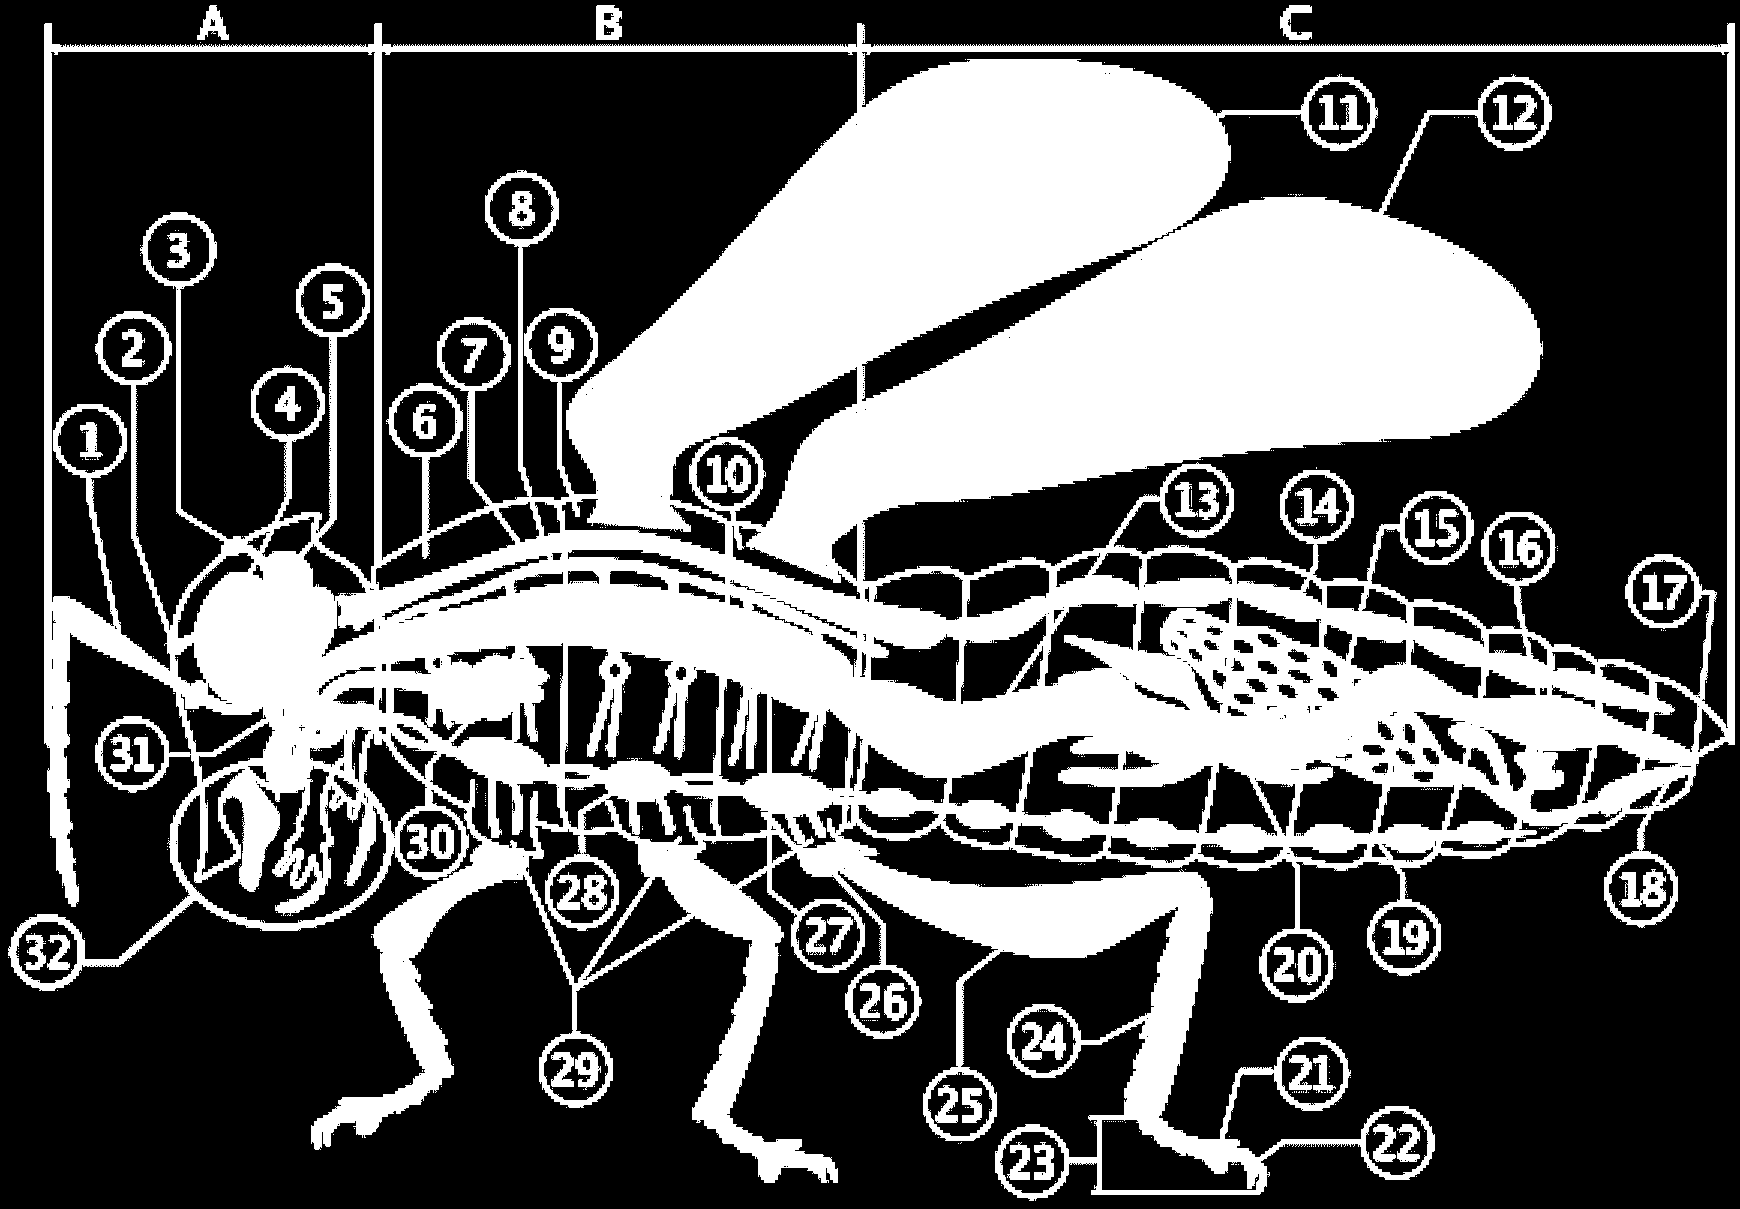 2 antennes, 6 pattes : c est 1 insecte A : tête / B : thorax / C : abdomen 1 : Antennes 2 : ocelles inférieure 3 : ocelle supérieure 4 : œil composite (ommatidies) 5 : cerveau (ganglion cérébral) 6 :